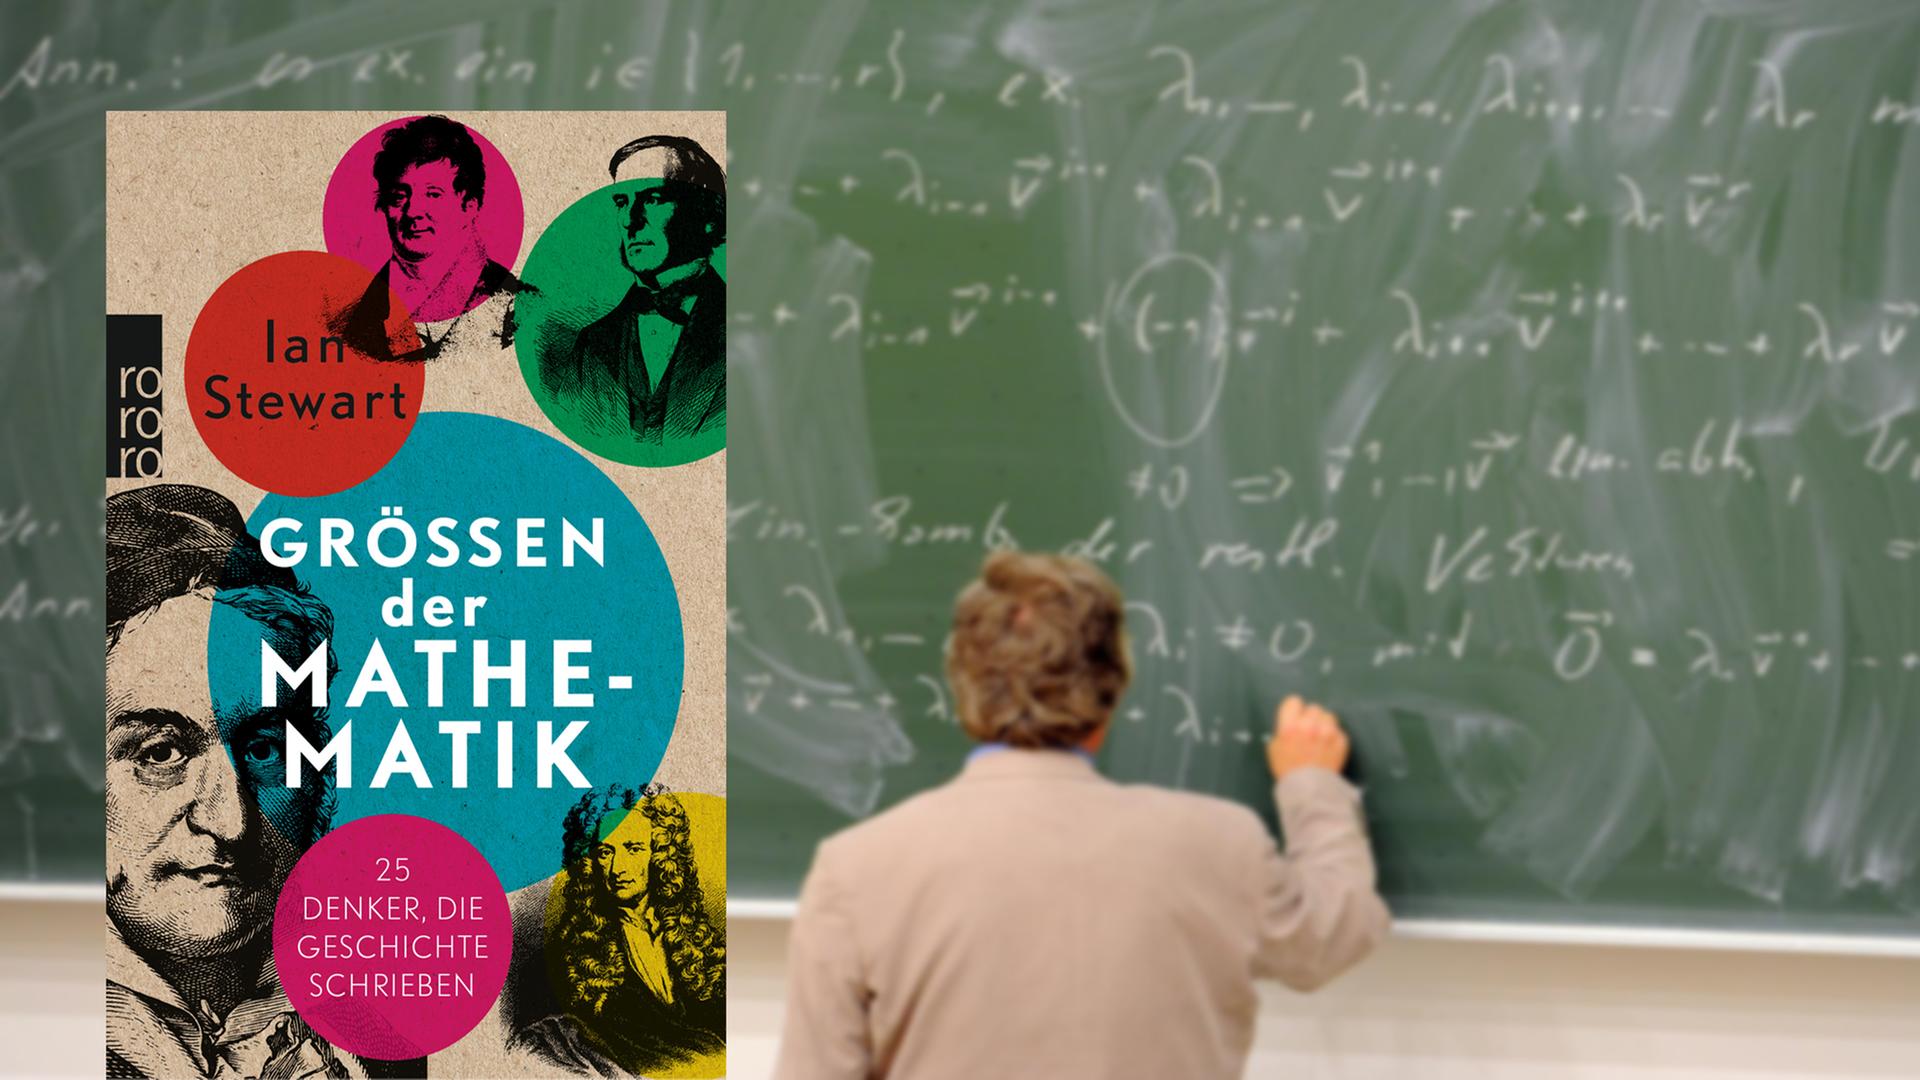 Auf dem Cover des Buches sind verschiedene Mathematiker zu sehen. Im Hintergrund ist ein Mann dargestellt, der Formeln auf eine grüne Tafeln